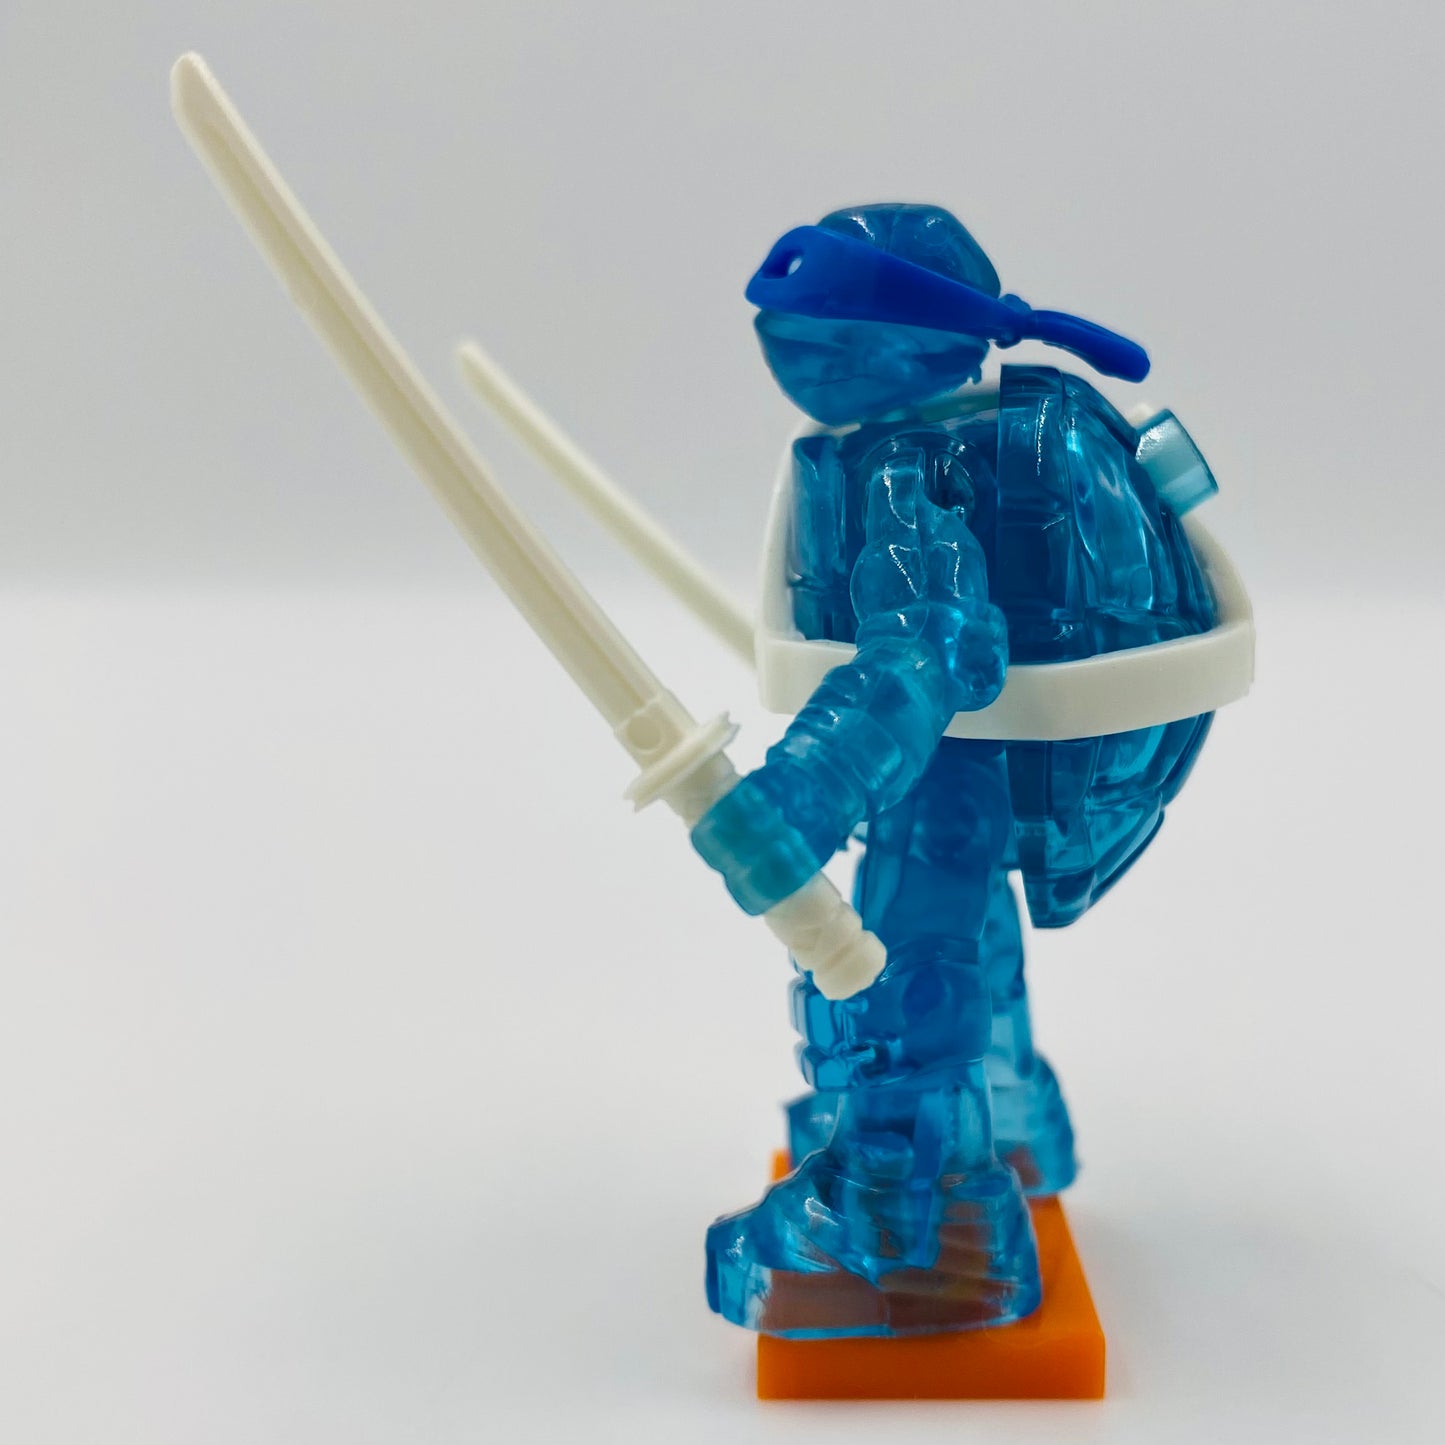 Mega Construx Teenage Mutant Ninja Turtles series 4 Leonardo loose 2” micro action figure (2015) Mattel